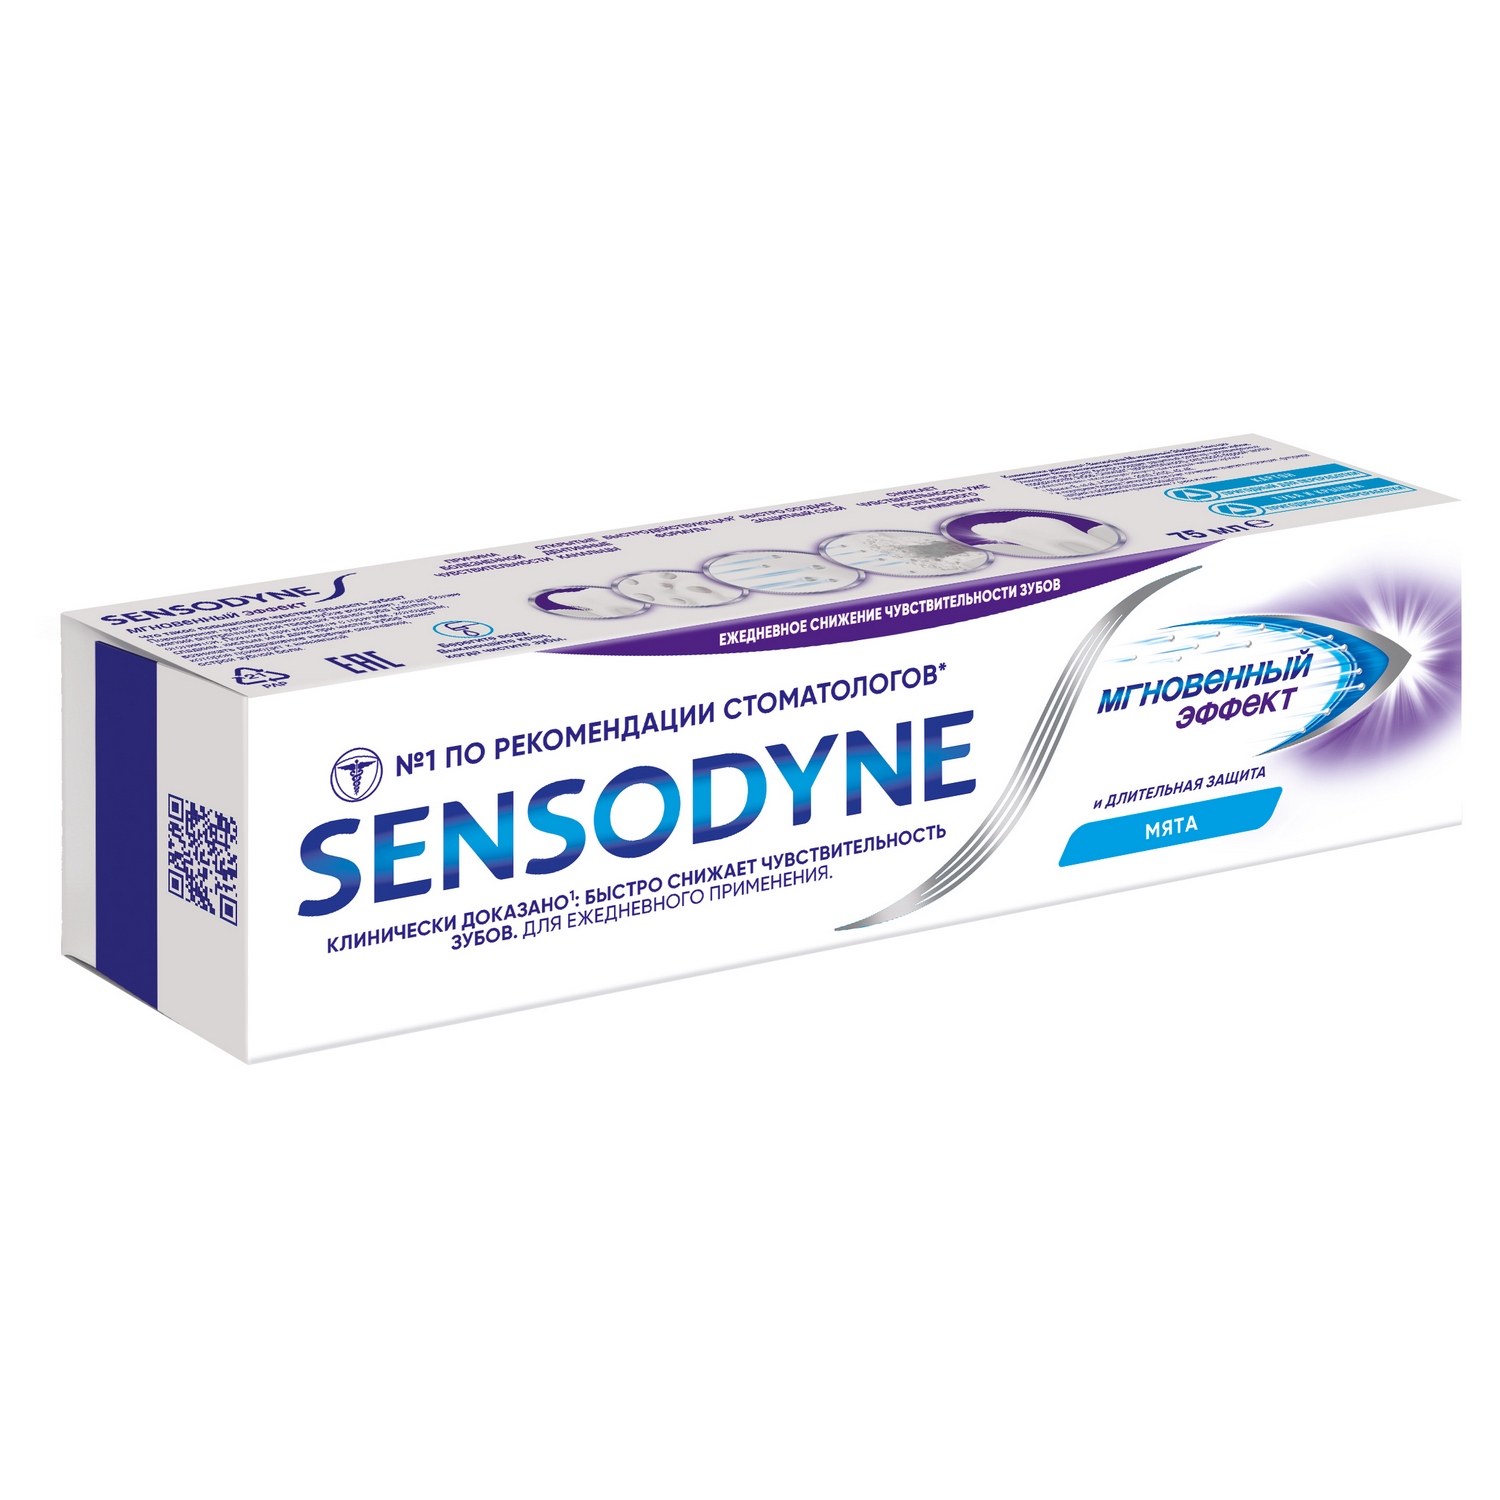 Сенсодин паста зубная Мгновенный эффект длительная защита 75мл паста зубная мгновенный эффект sensodyne сенсодин 75мл